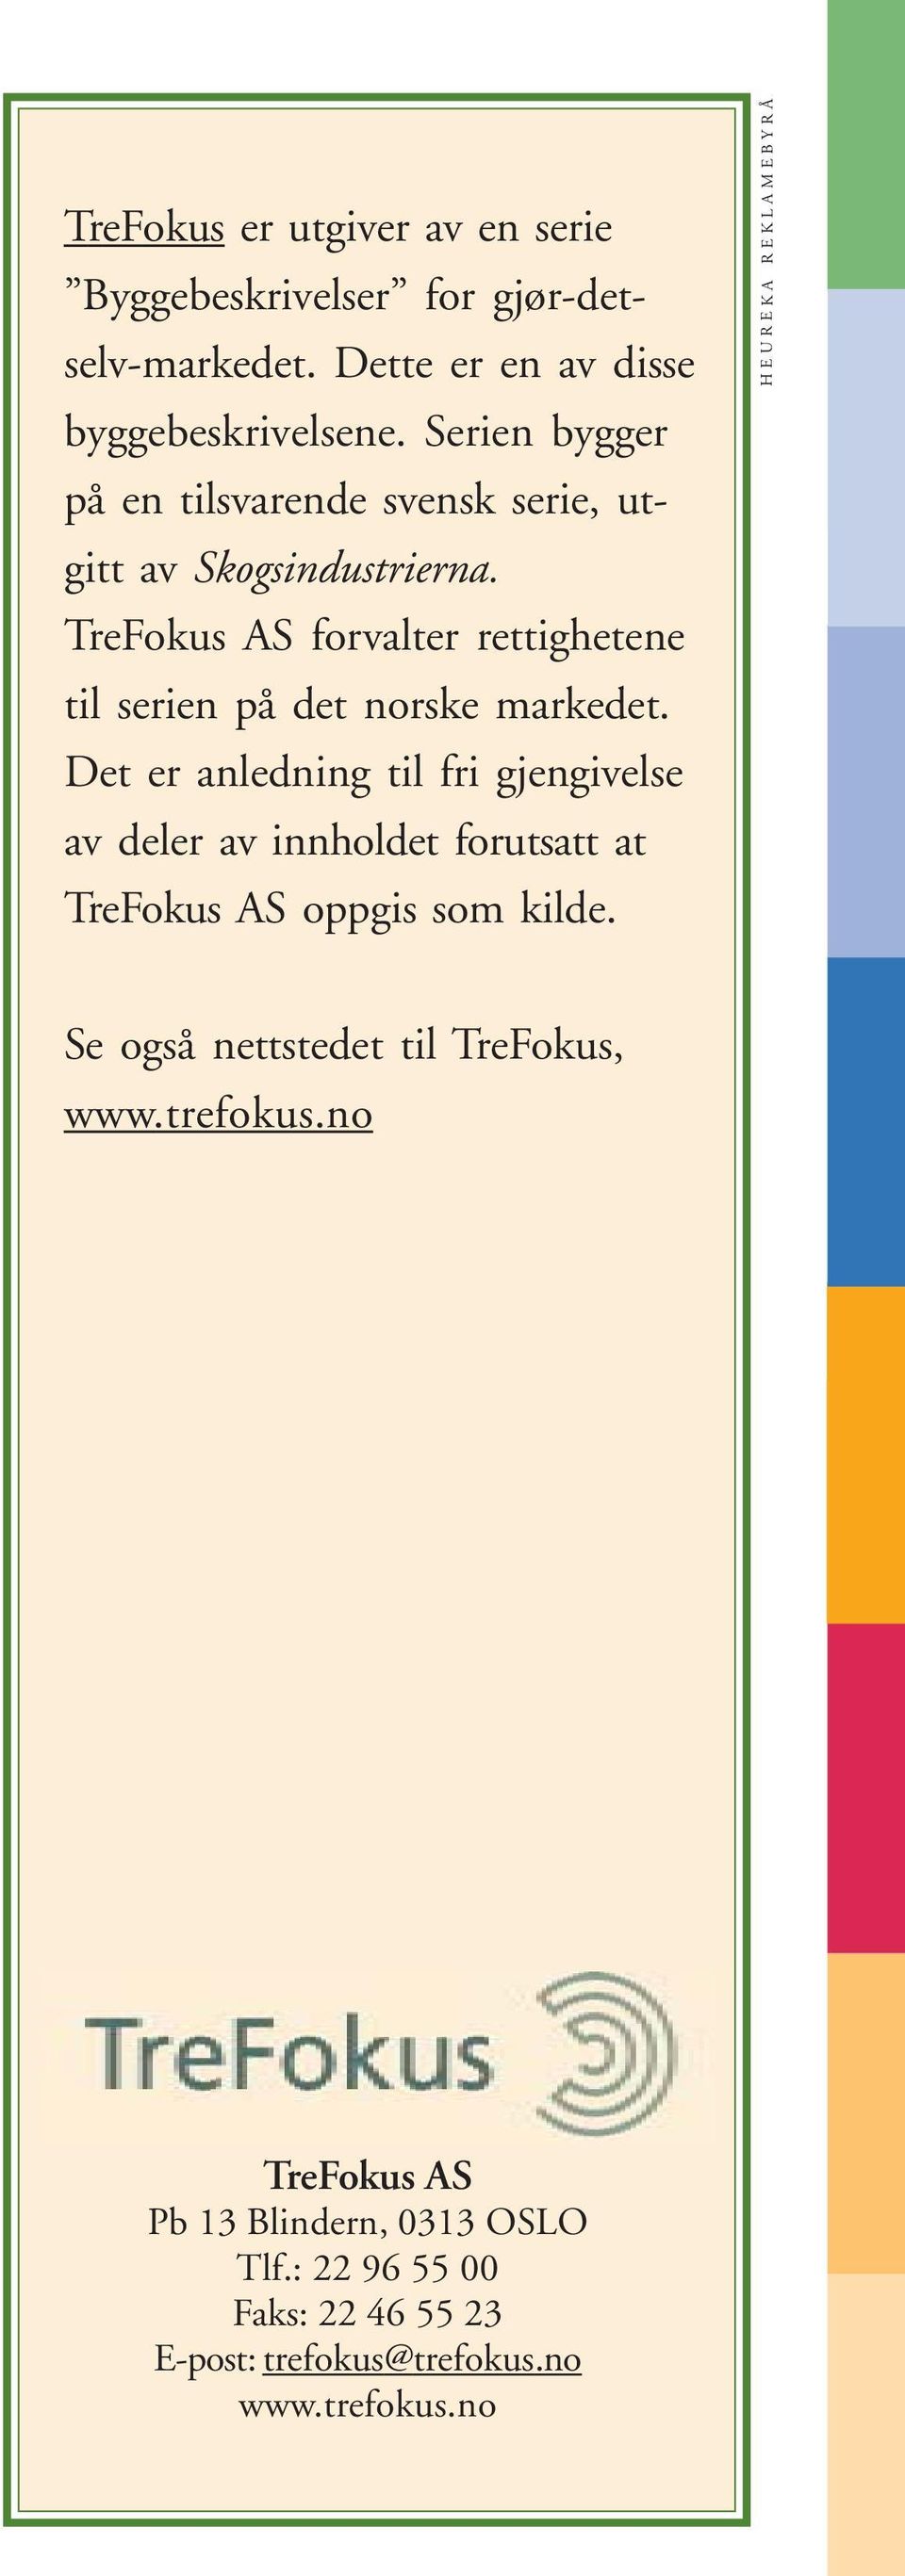 TreFokus AS forvalter rettighetene til serien på det norske markedet.